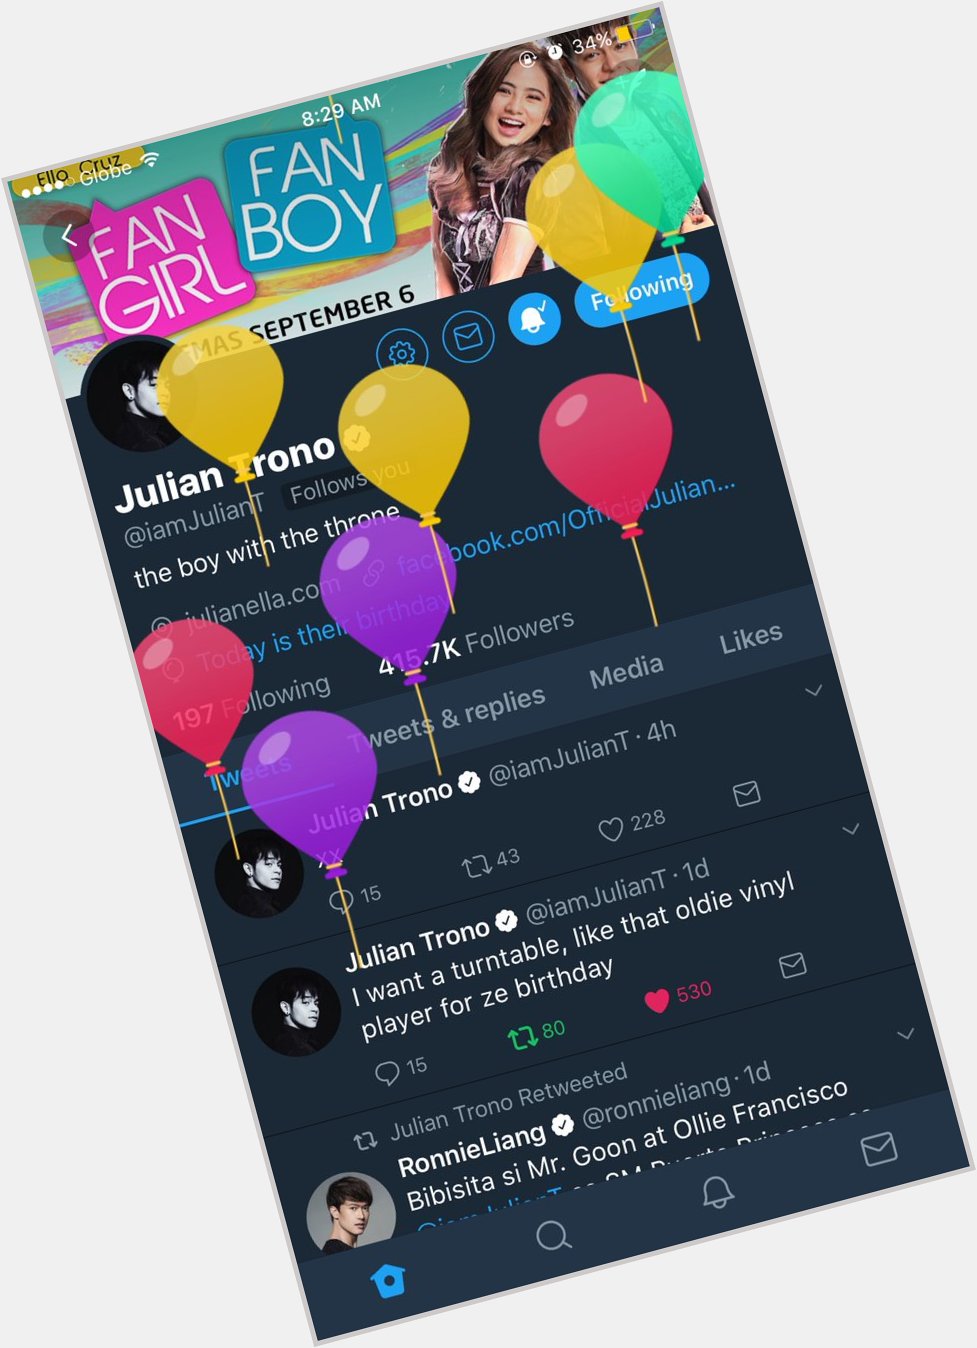 May pa balloons ang message!
Happy birthday Julian Trono 